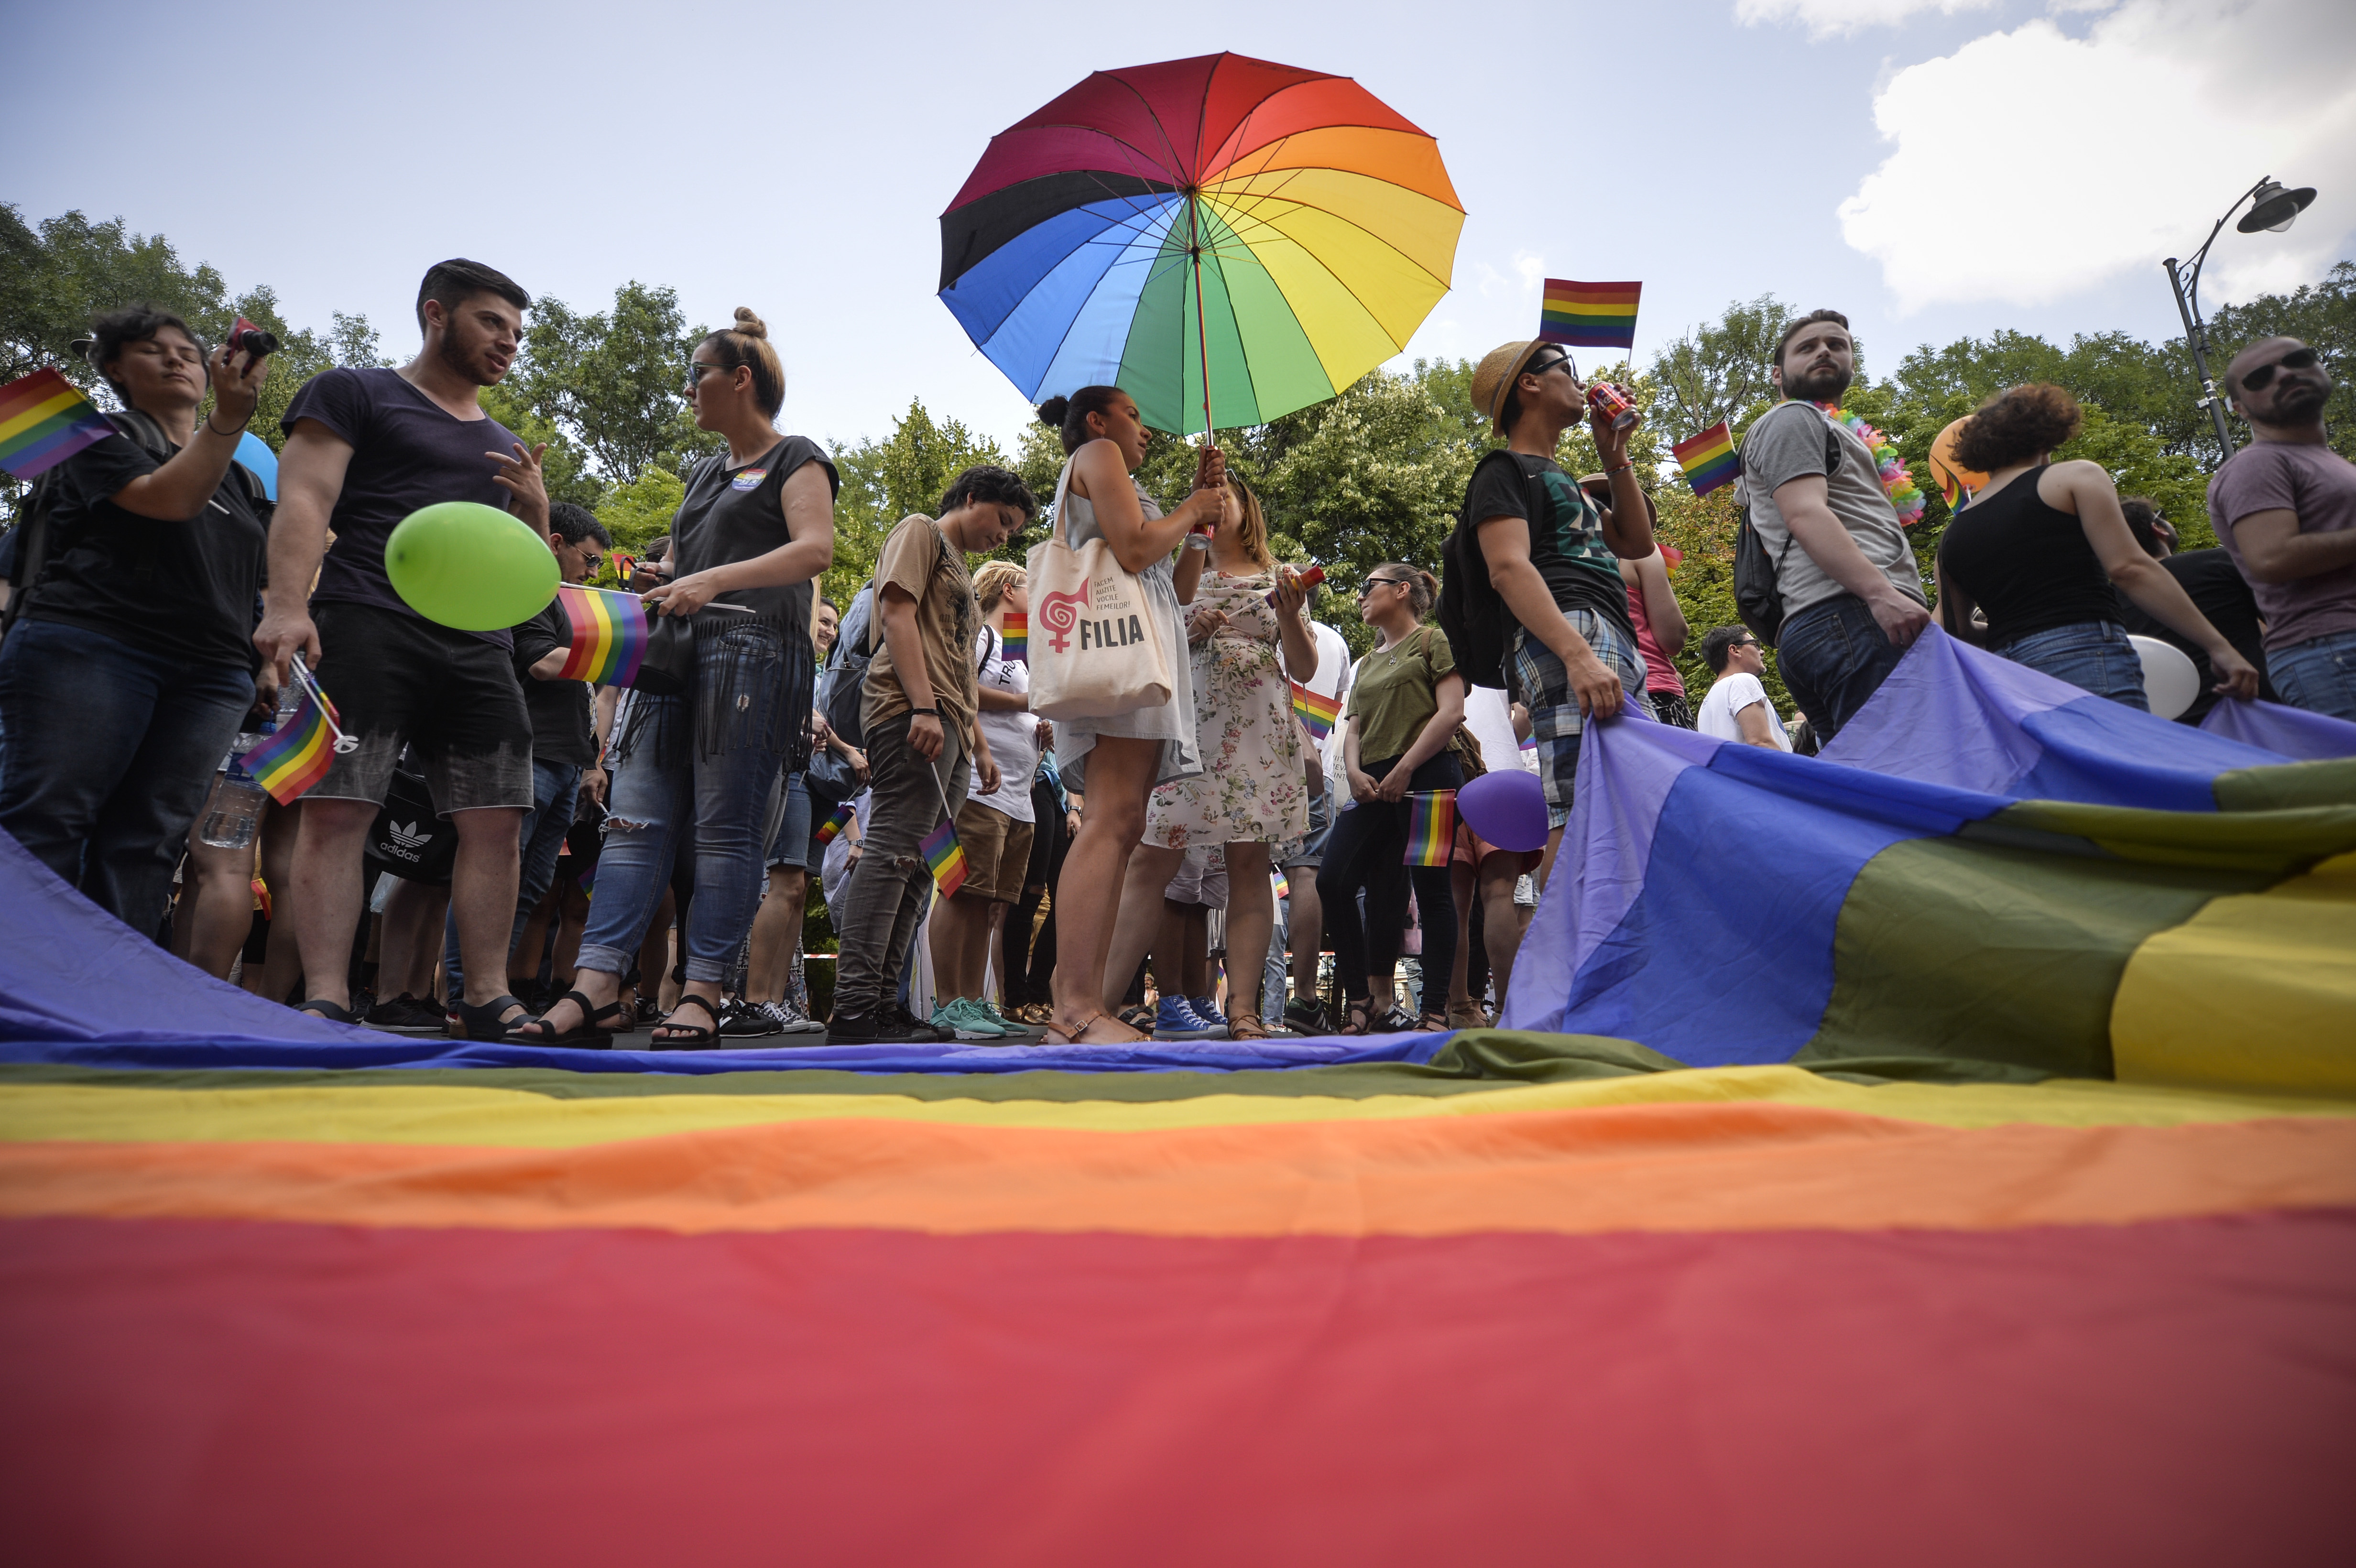 Bucurie într-un CLUB DE GAY din Bucureşti, după eşecul Referendumului. Nu  există familie tradiţională, tradiţional este porcul